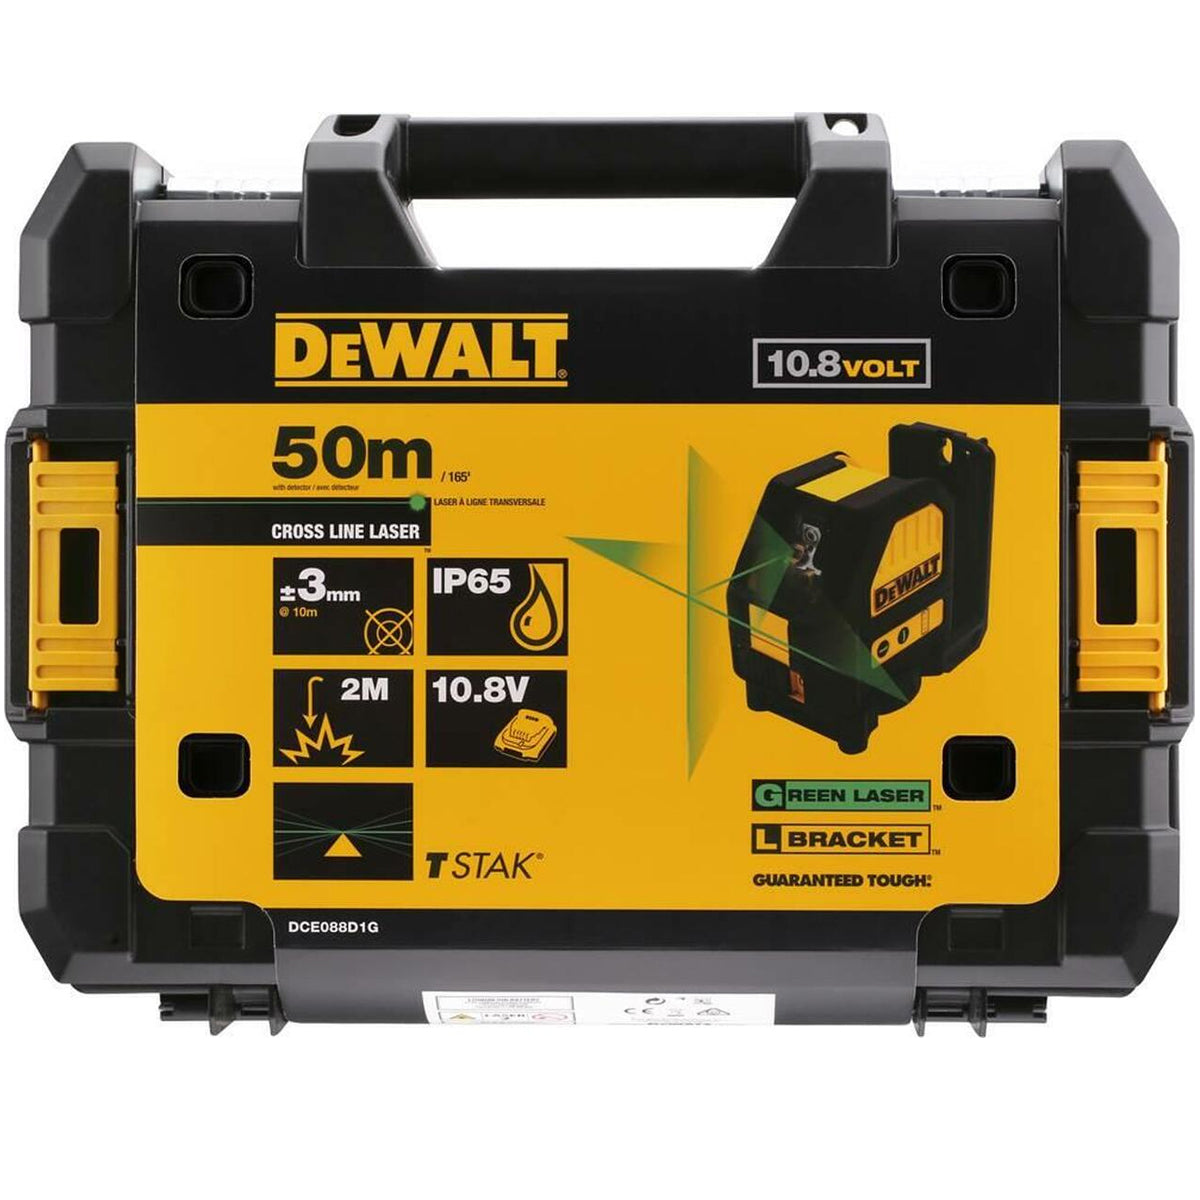 Dewalt DCE088D1G 10.8V Self-Levelling Green Cross Line Laser With 2.0Ah Battery Charger